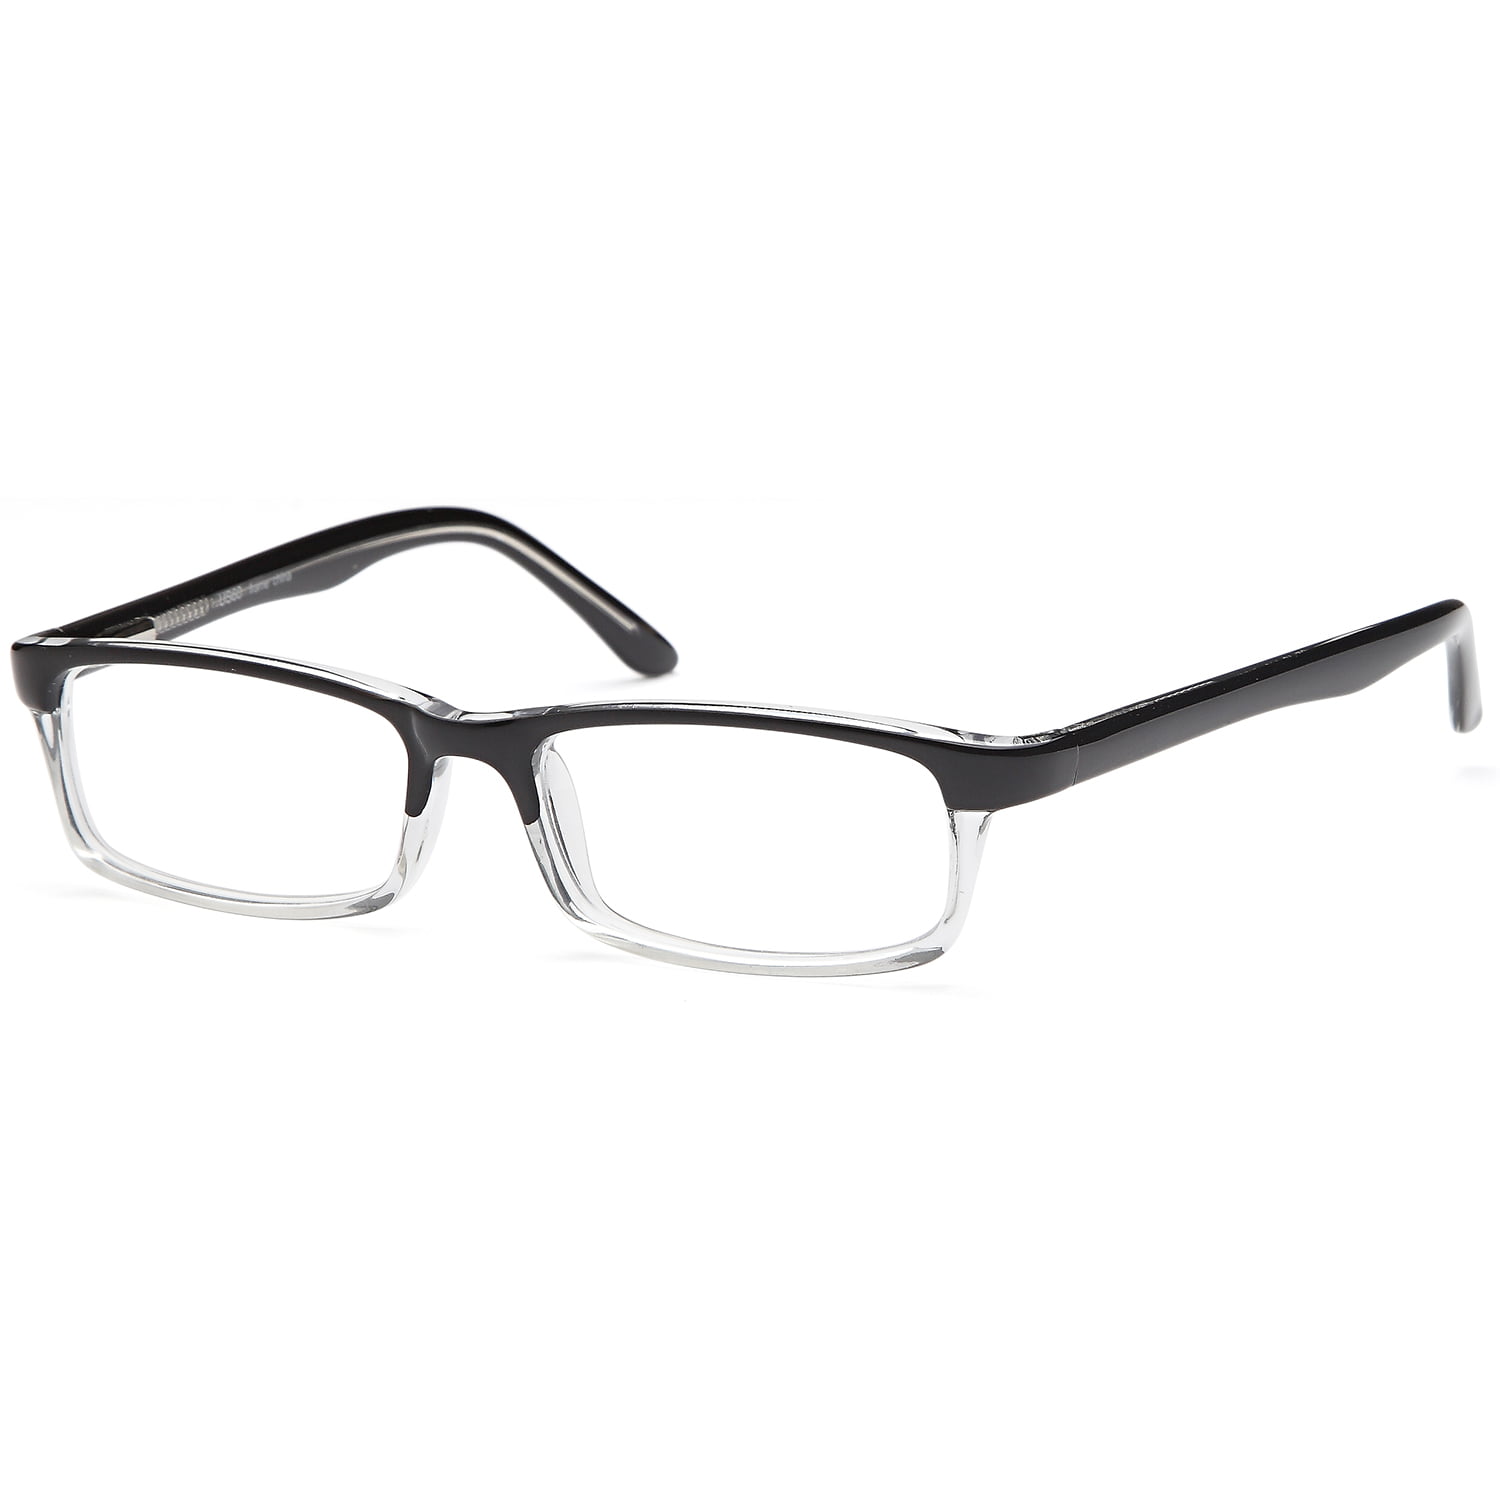 Men S Eyeglasses 52 18 140 Black Plastic